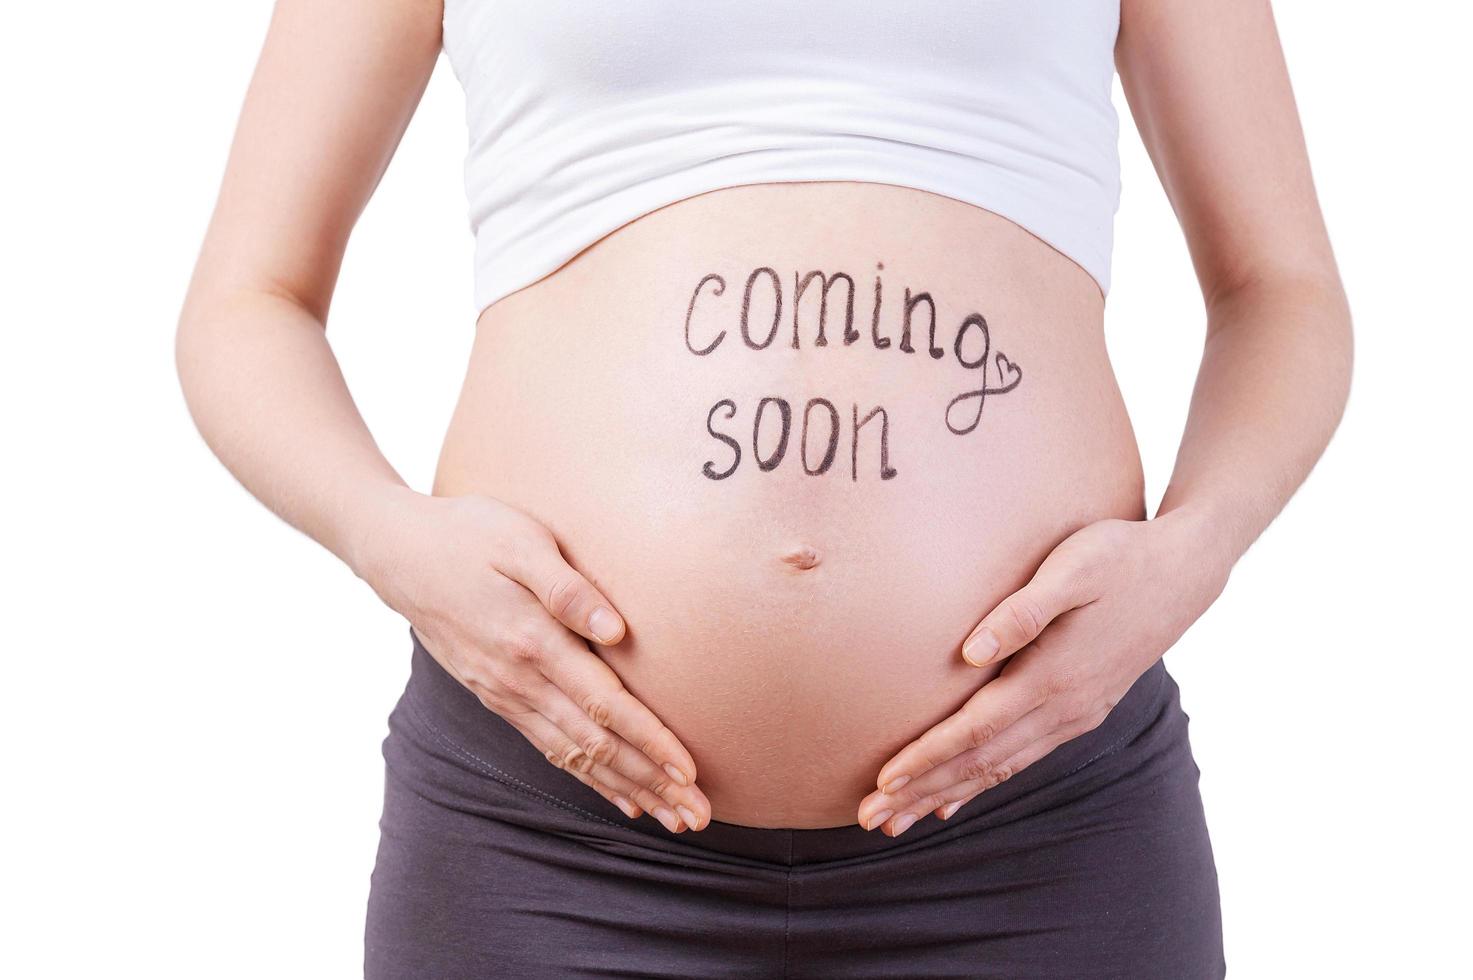 próximamente, en breve, pronto. imagen recortada de una mujer embarazada  con un cartel de próximamente en su vientre aislado en blanco 13508162  Foto de stock en Vecteezy